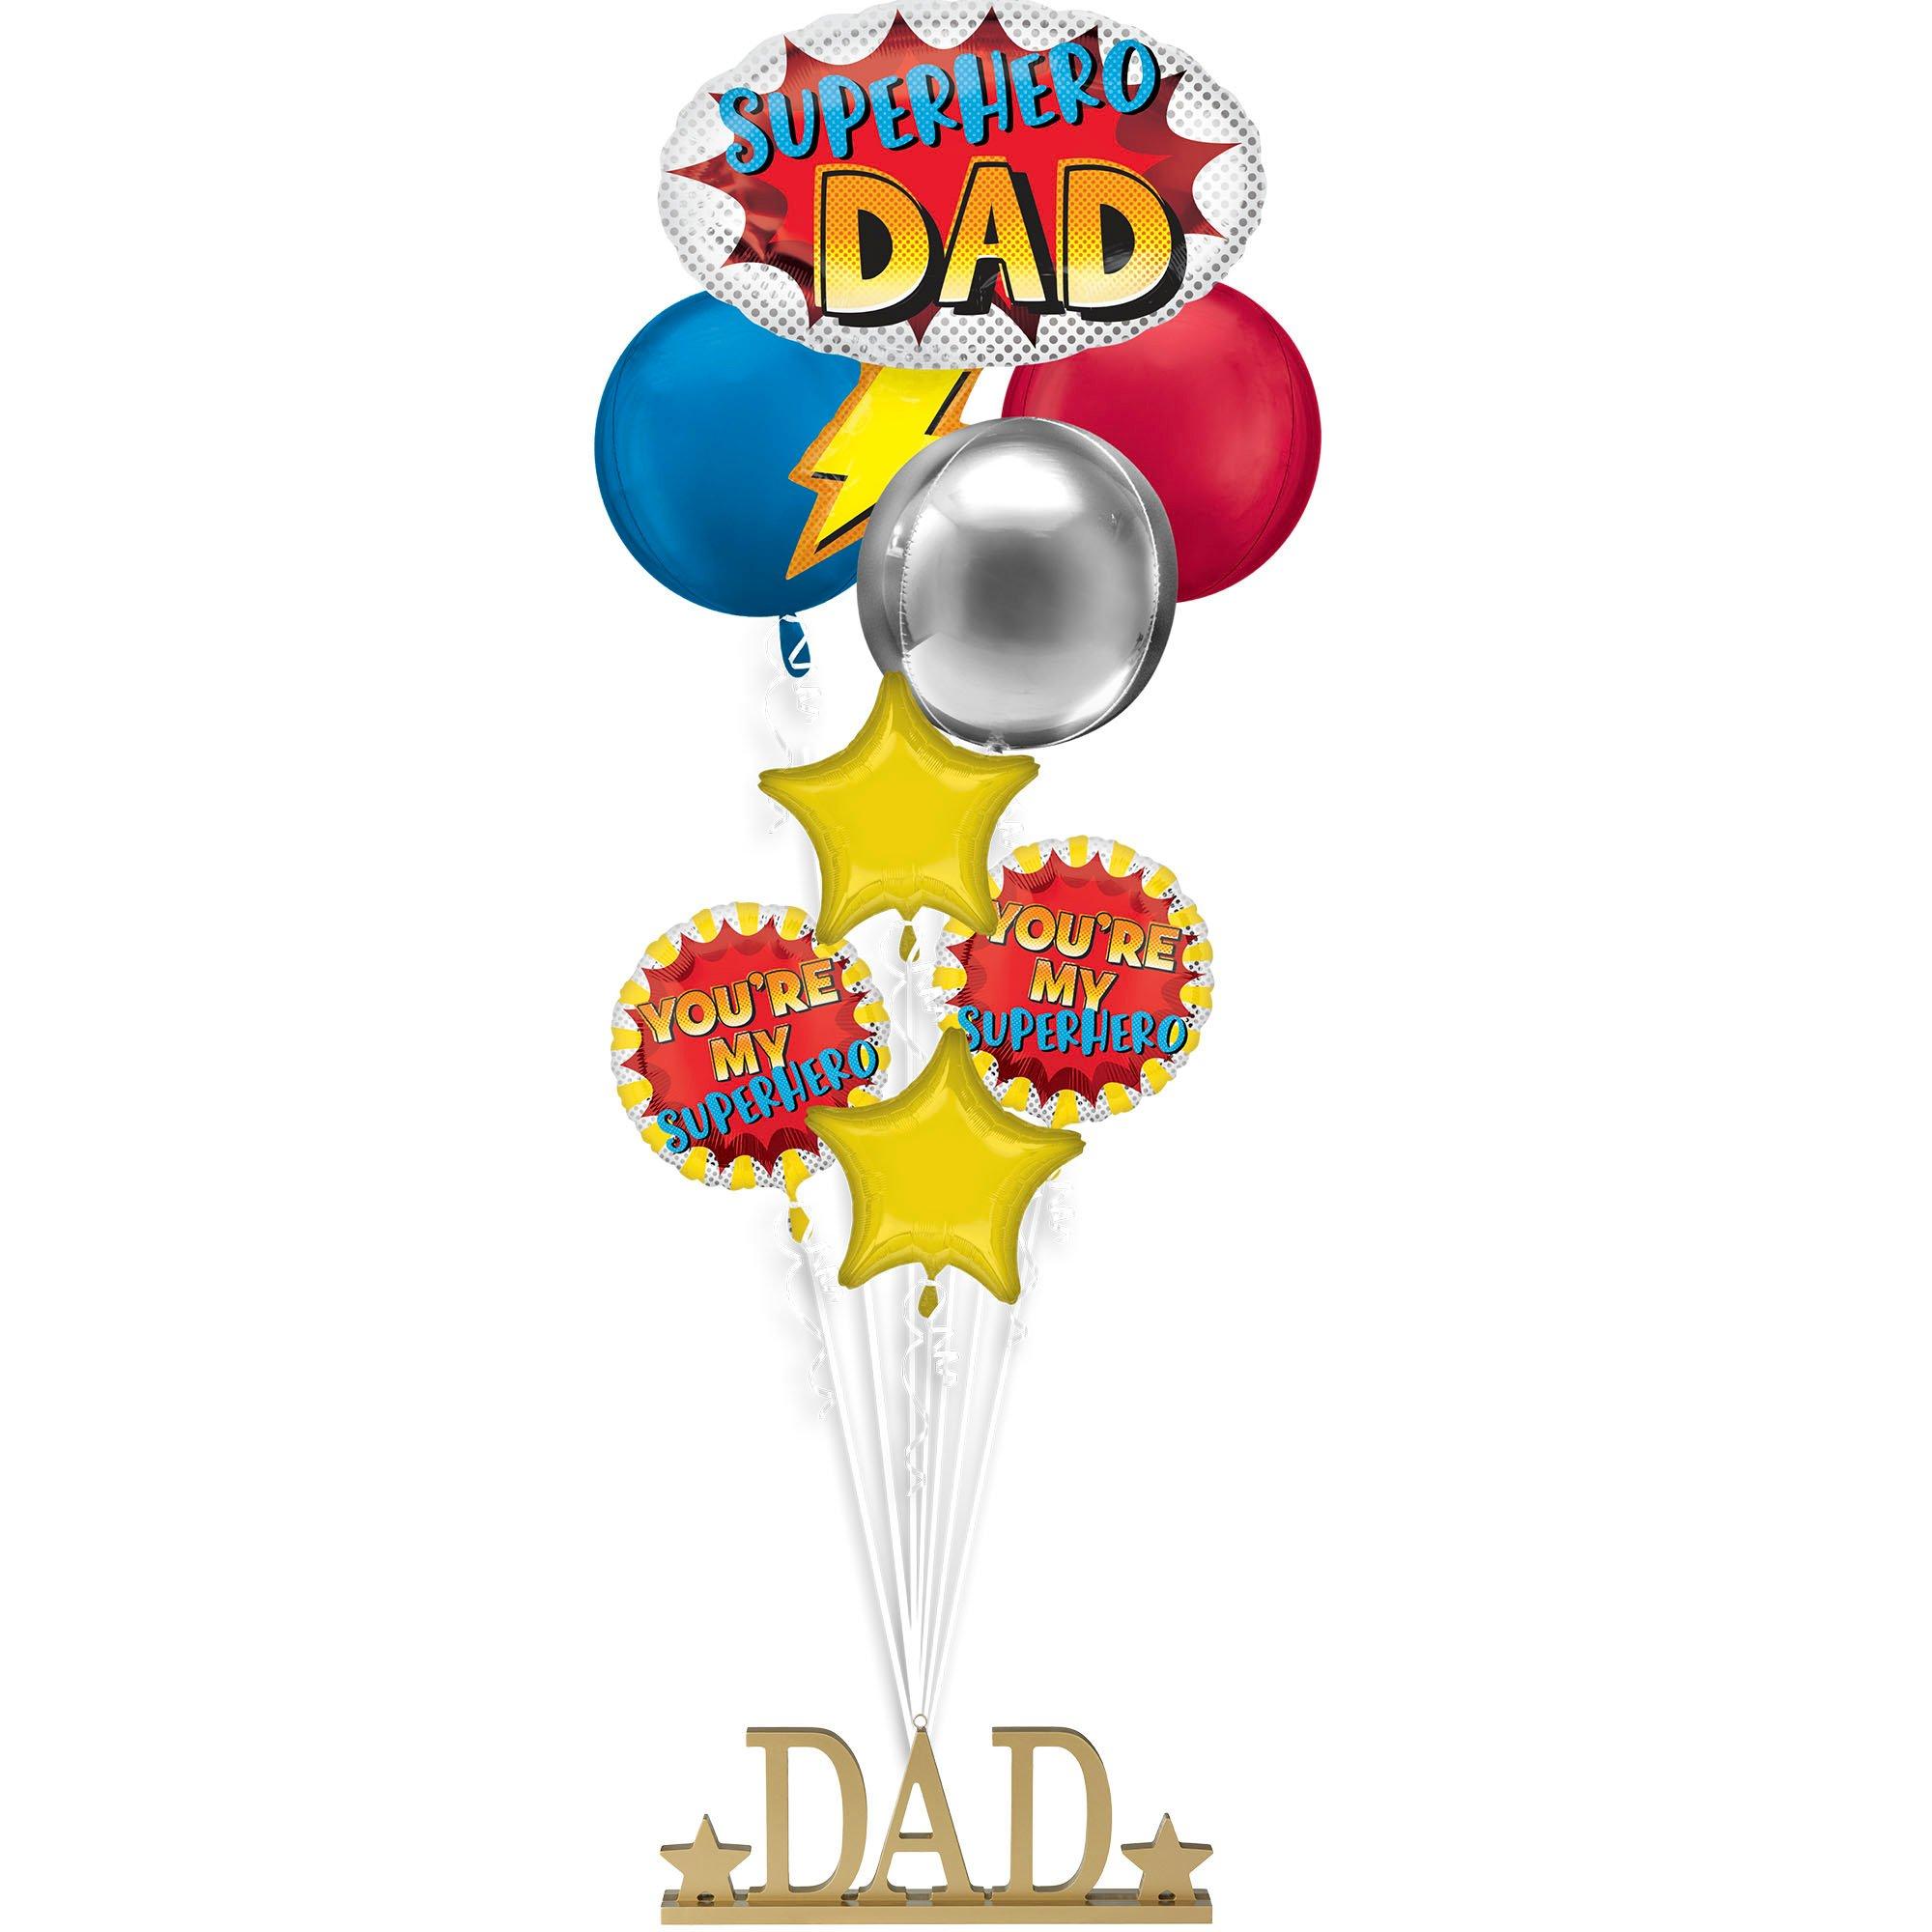 Superhero Dad Premium Balloon Bouquet with Gold Dad Balloon Weight